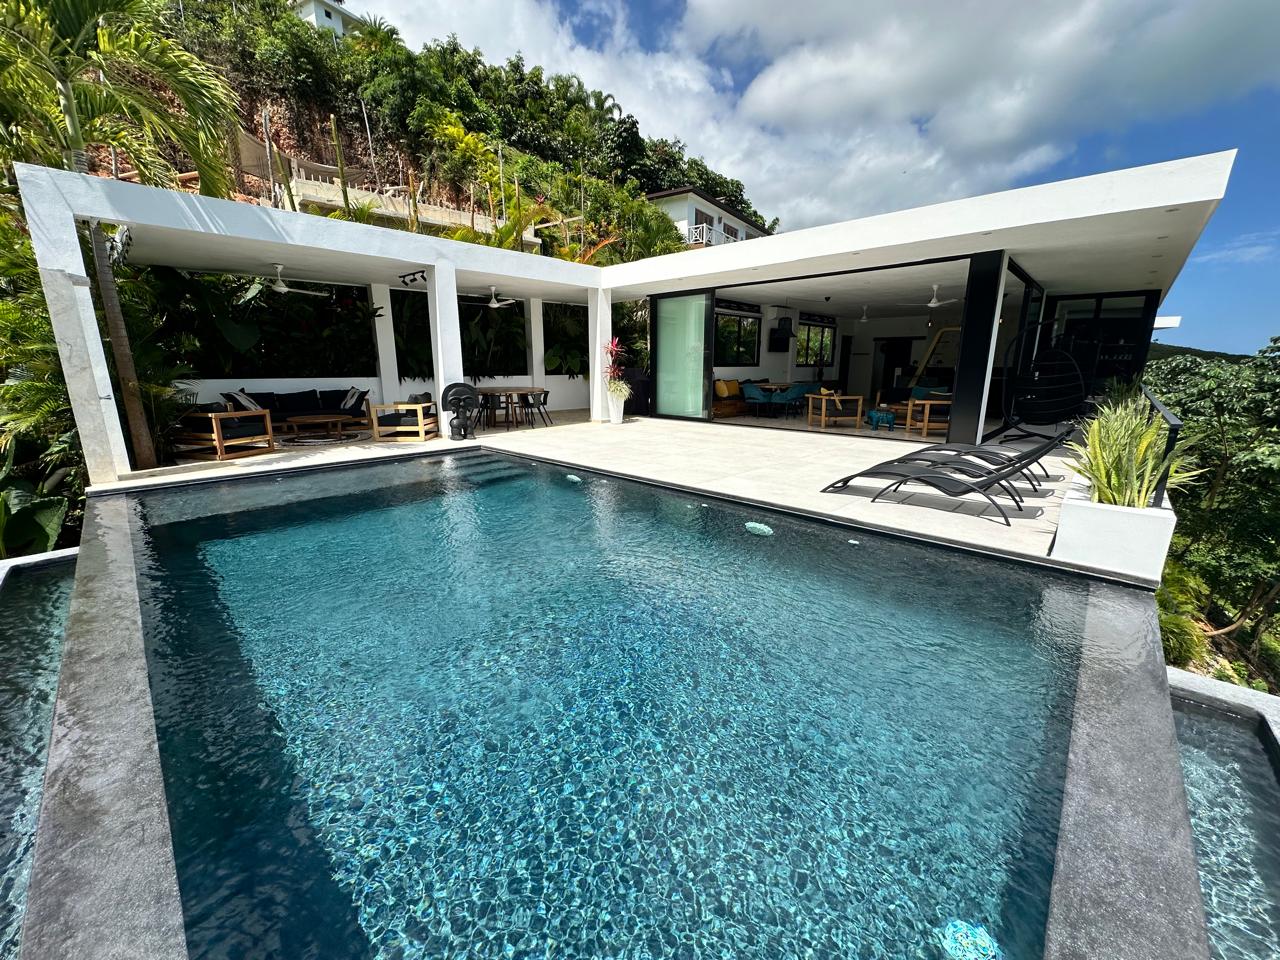 Splendid 4-bedroom villa with ocean vista - Las Terrenas Real Estate - Ocean Edge Dominican Republic (7)